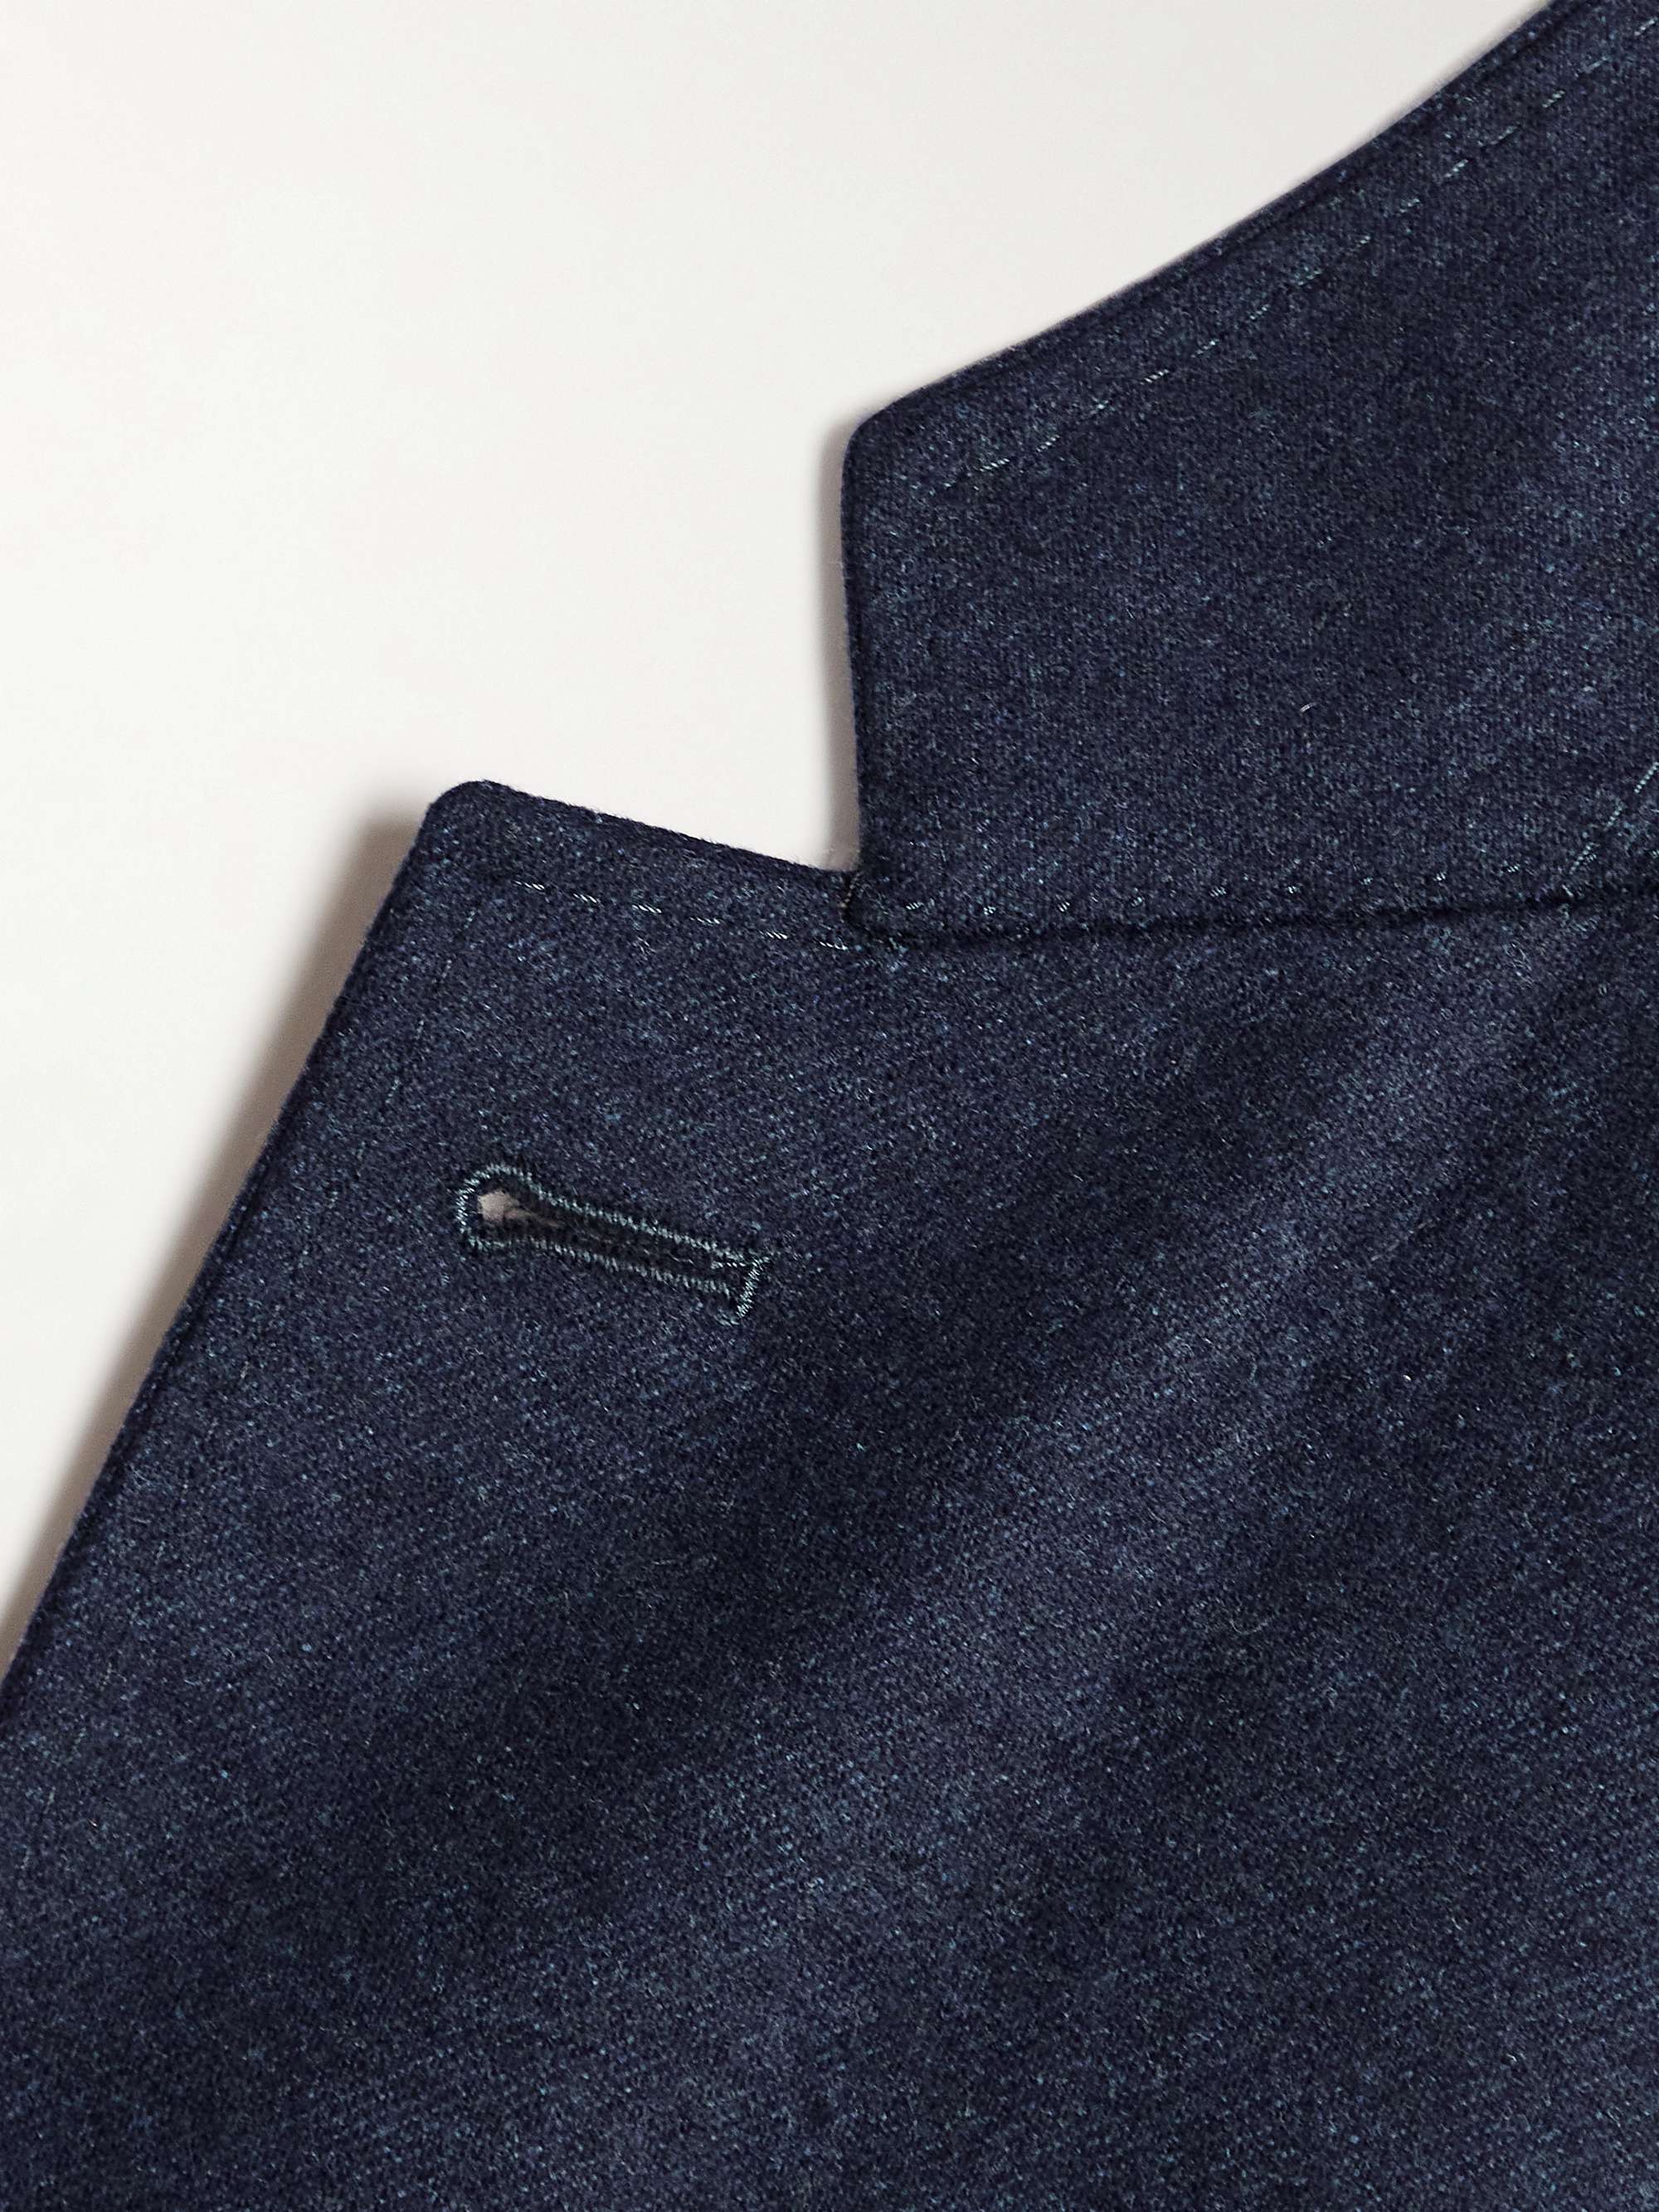 CANALI Kei Slim-Fit Wool Suit Jacket